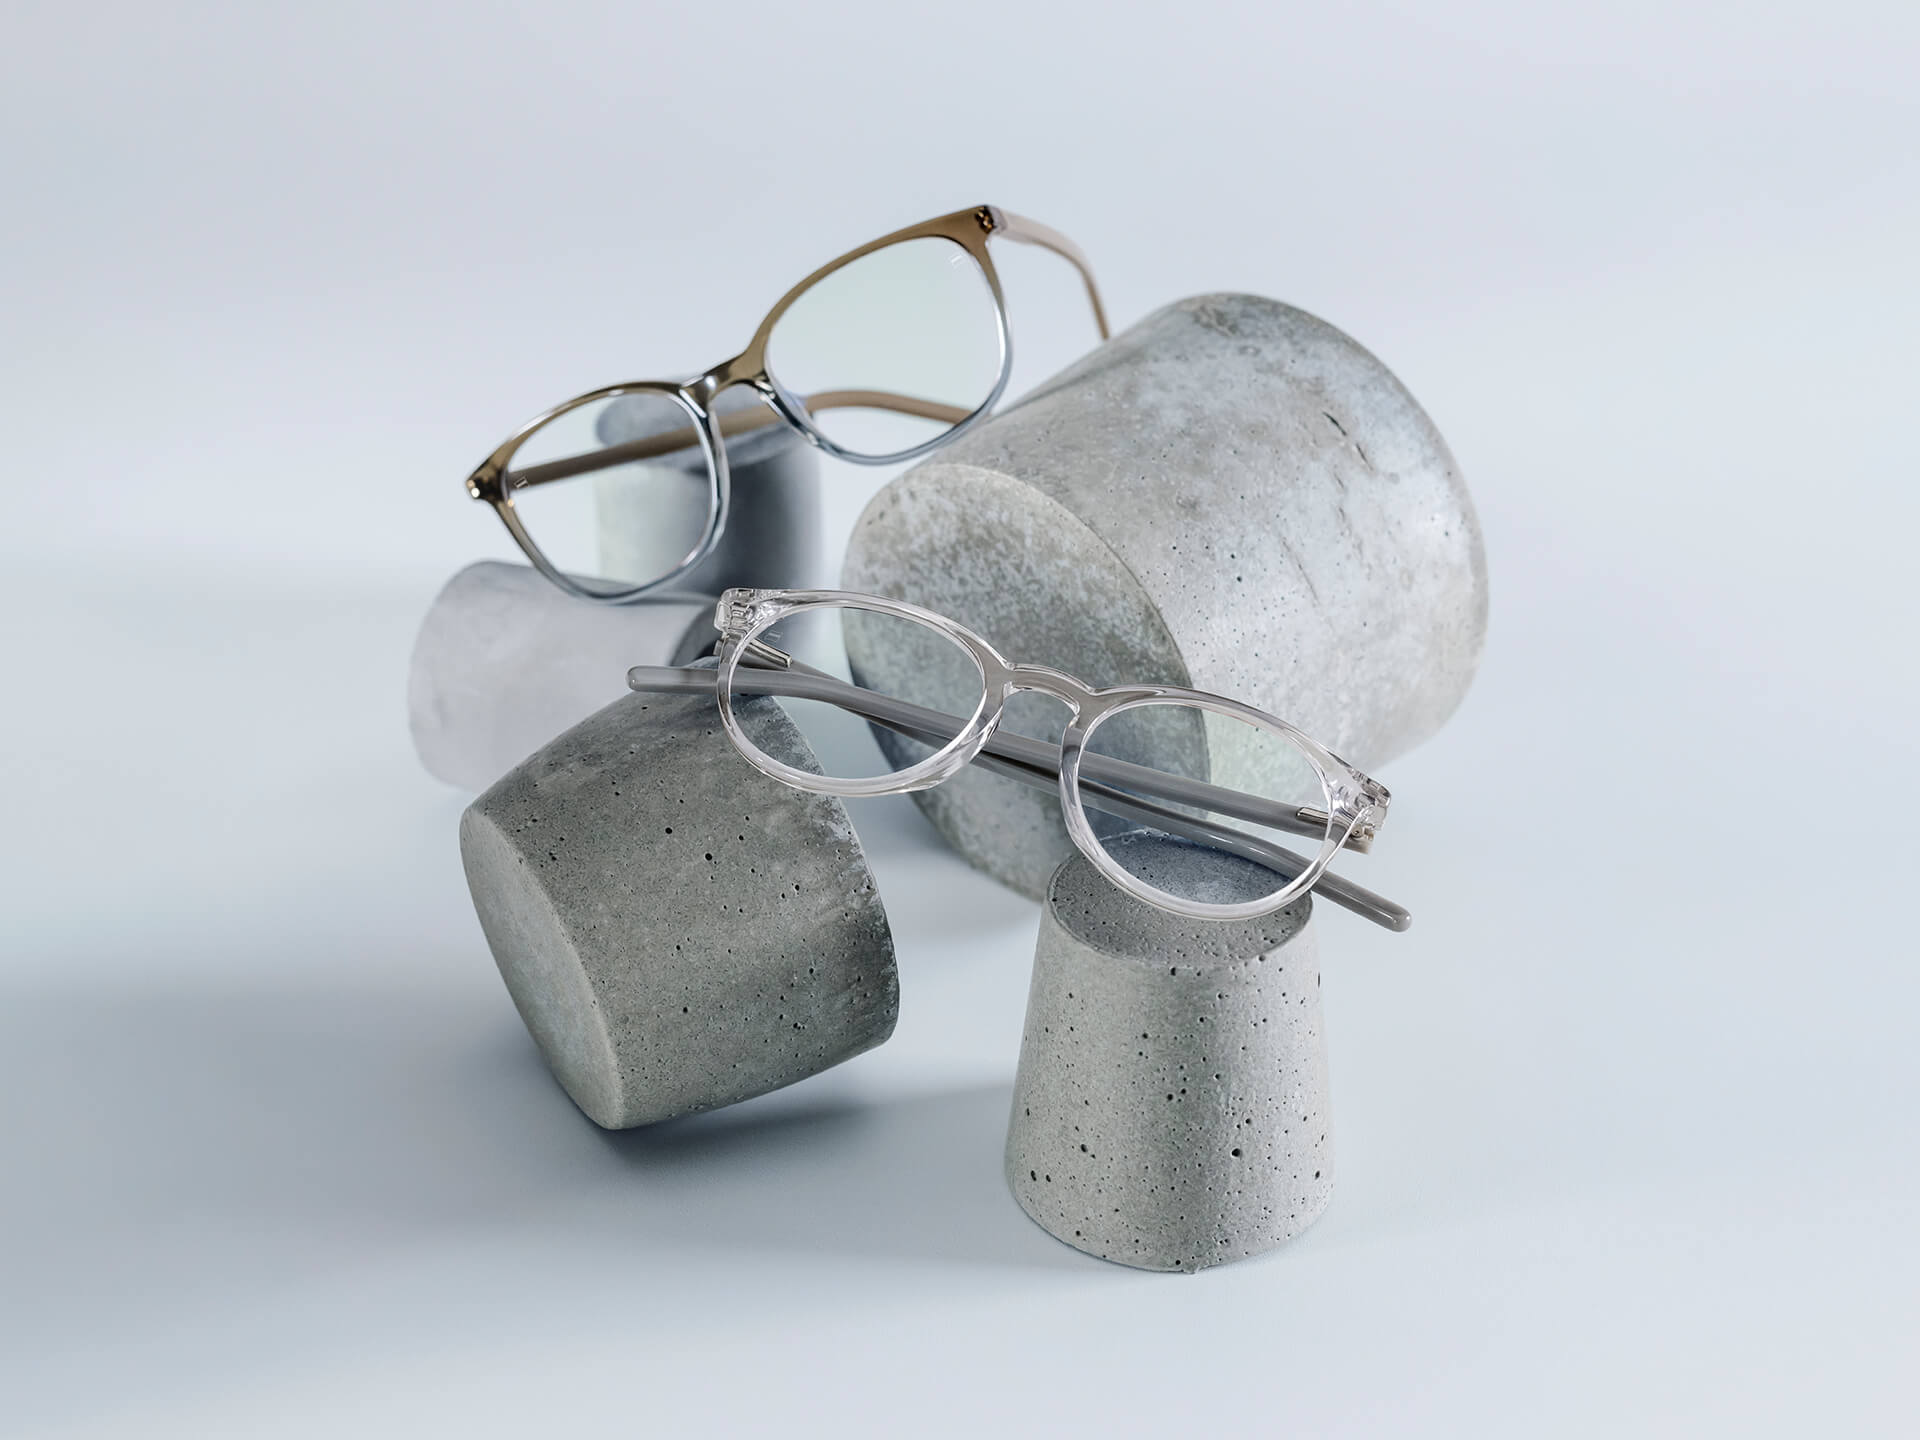 Glasögon med ZEISS-glas försedda med DuraVision® Chrome-ytbehandling ligger på stenunderlägg av olika storlek.